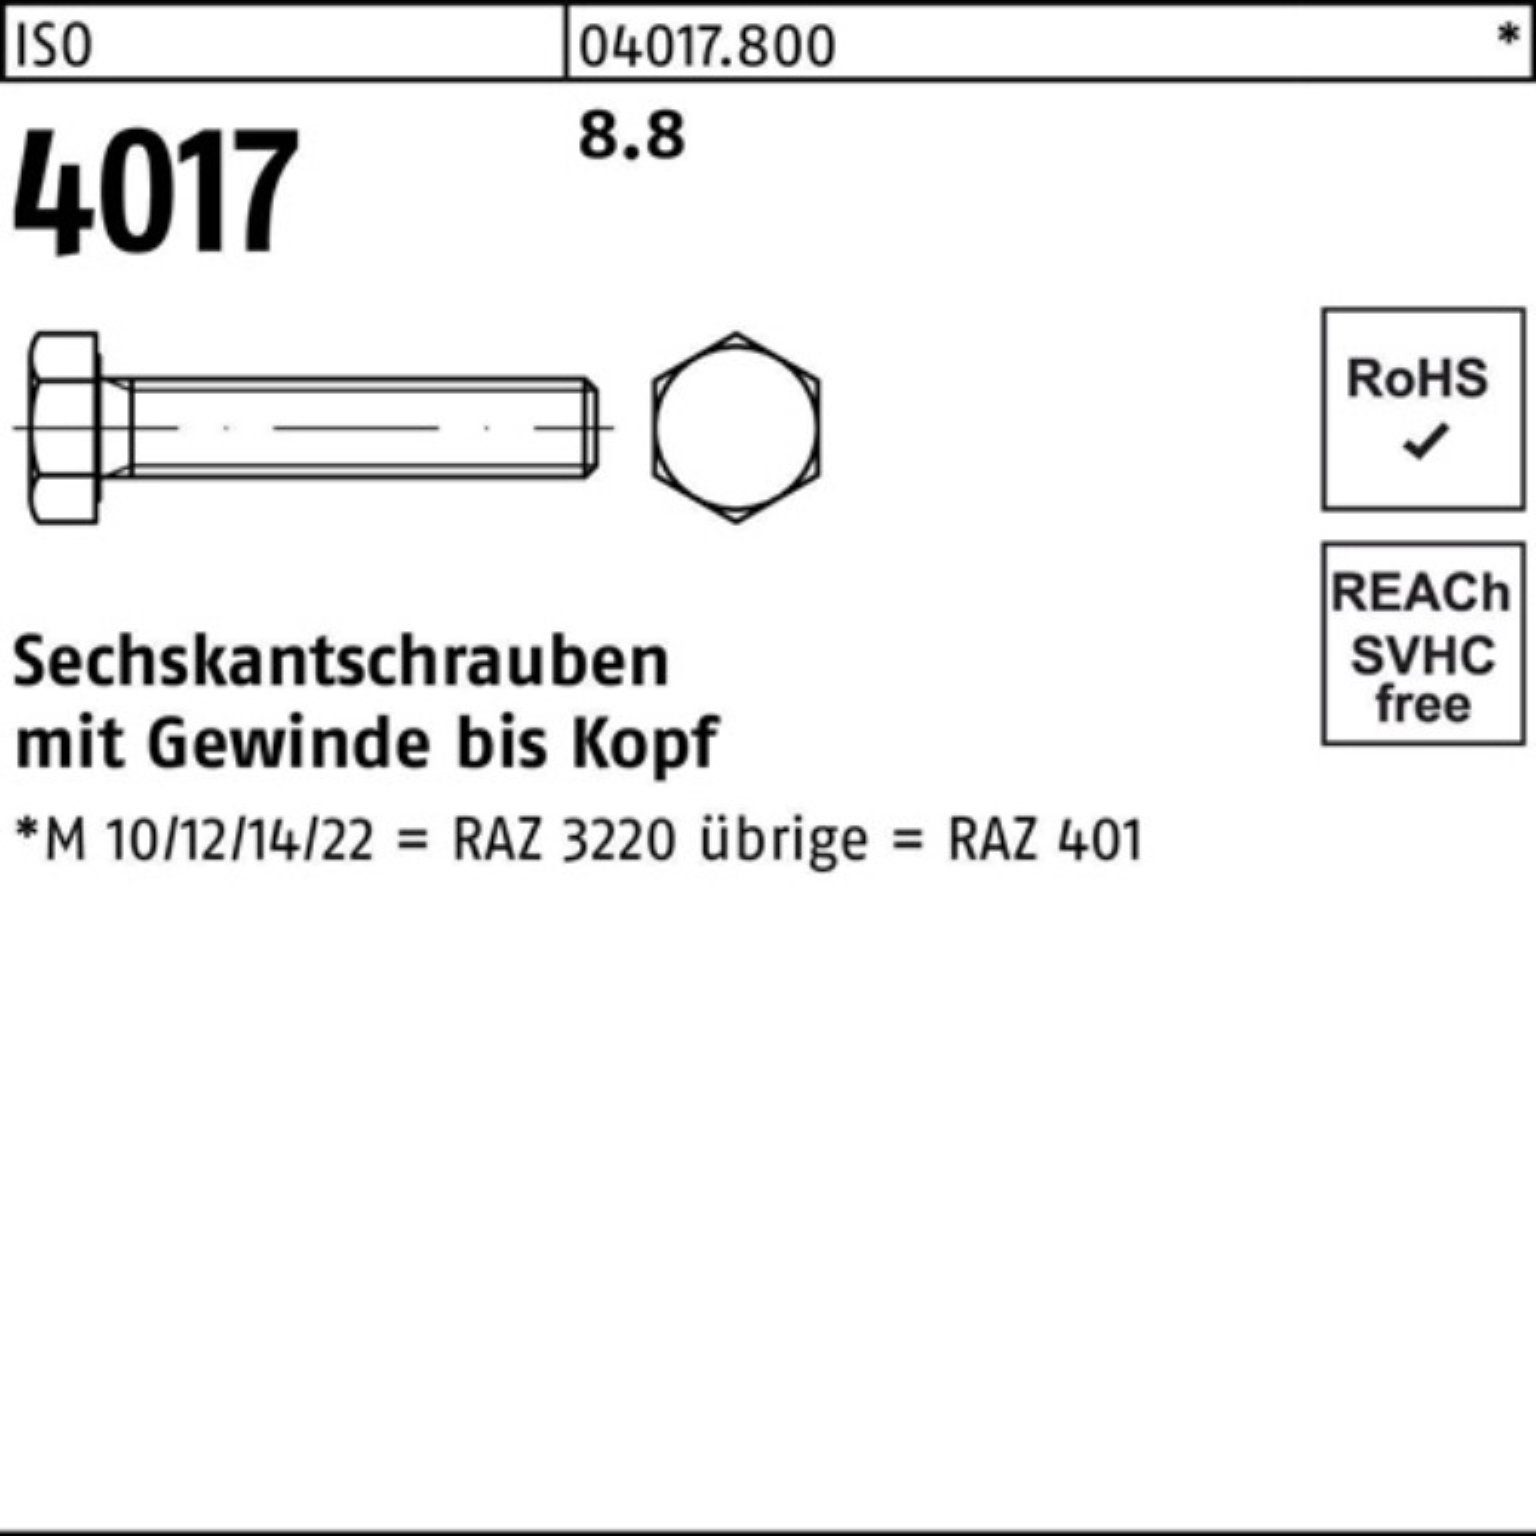 VG Stück Sechskantschraube 25 Pack ISO 8.8 401 500er 4017 ISO Sechskantschraube Bufab 500 M3x